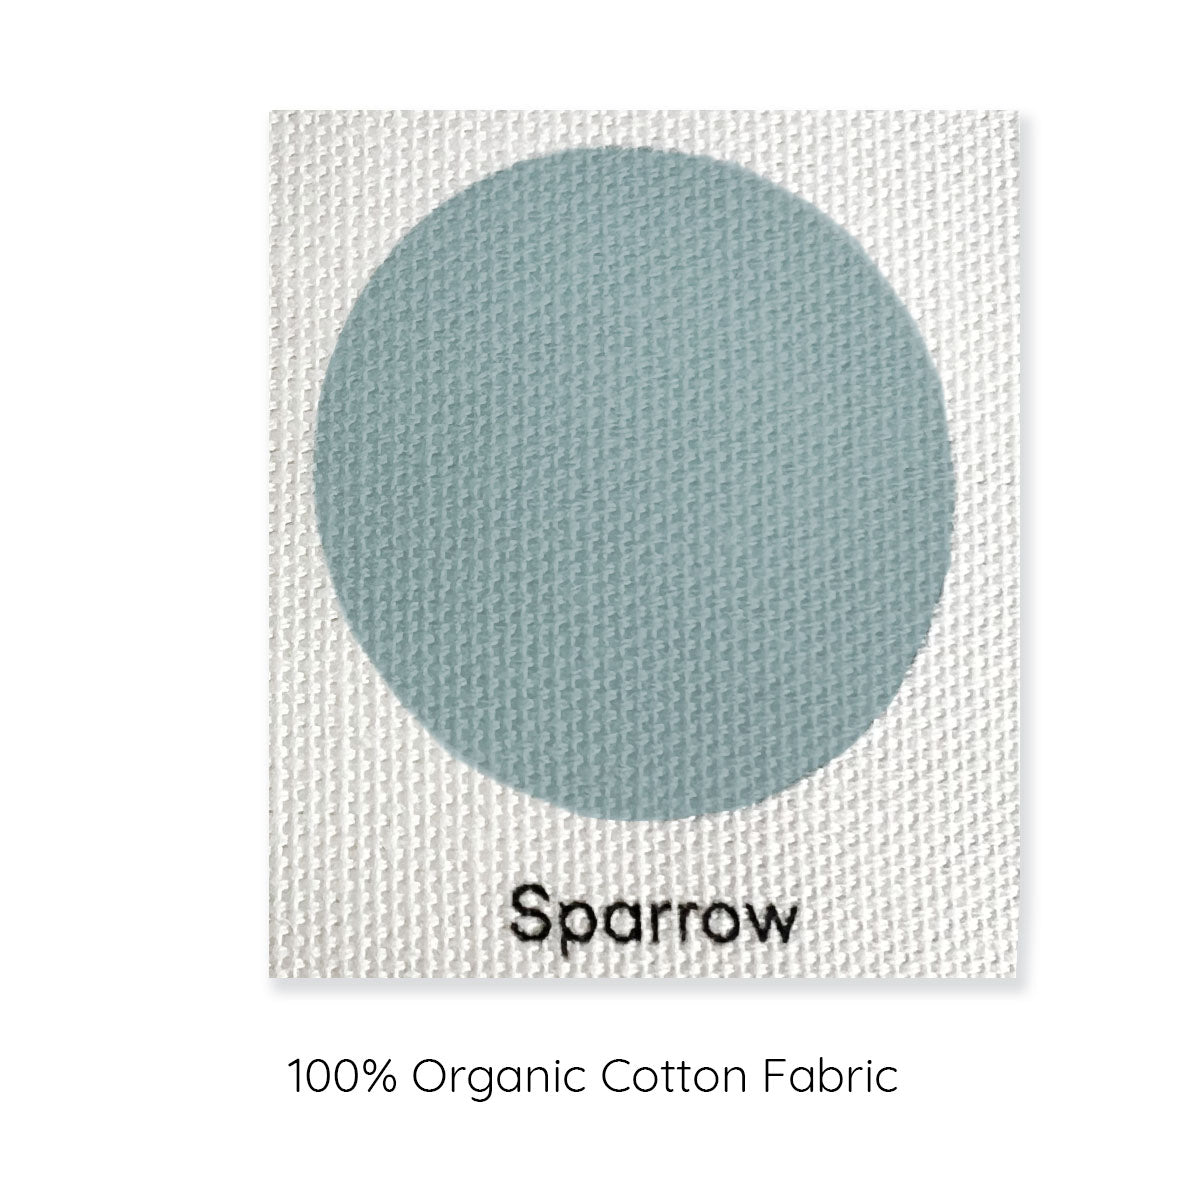 modeabode sparrow 100% colour swatch.